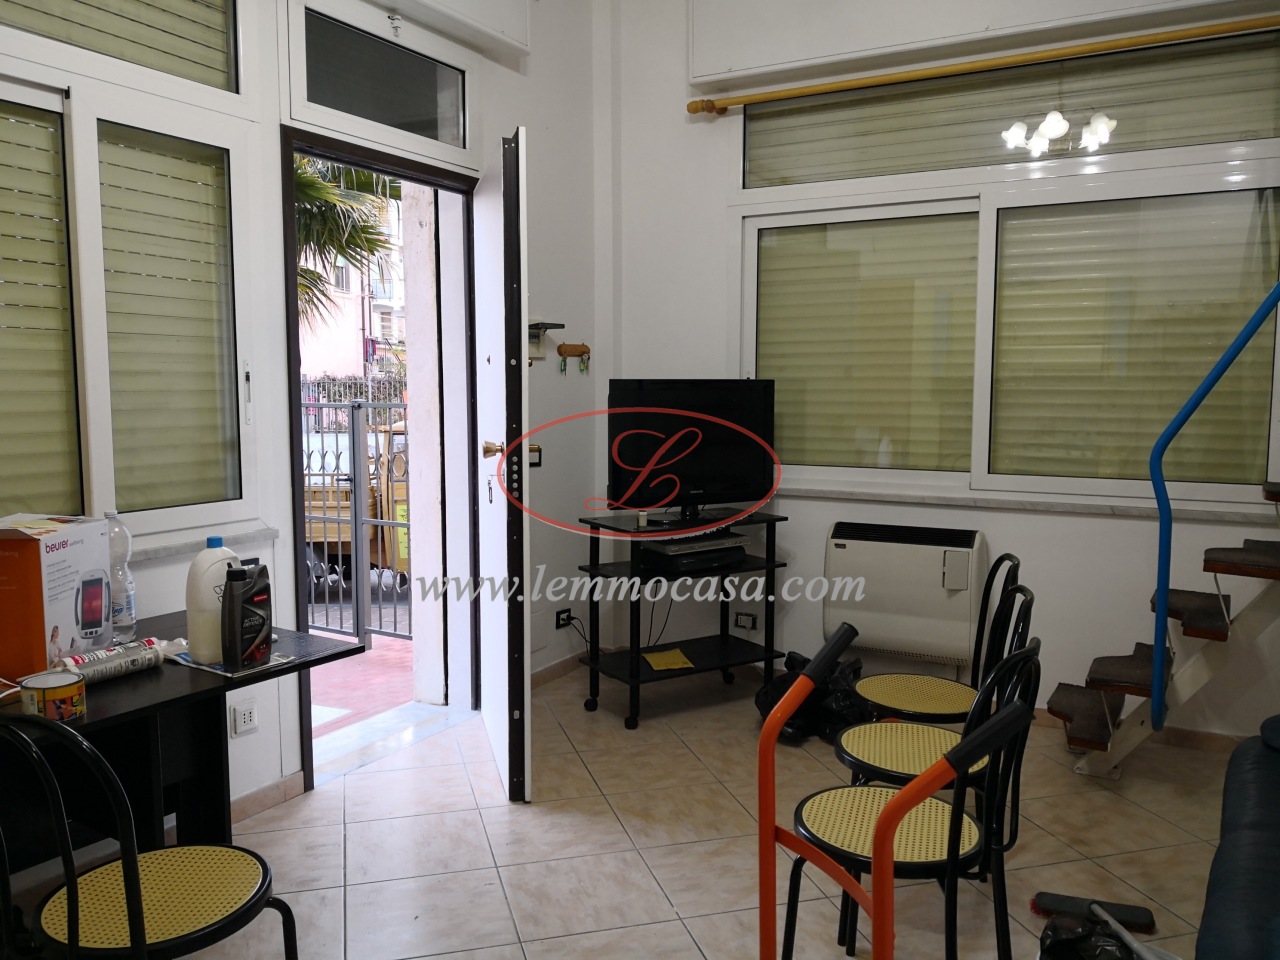 Appartamento in vendita a San Bartolomeo al Mare, 2 locali, prezzo € 150.000 | PortaleAgenzieImmobiliari.it